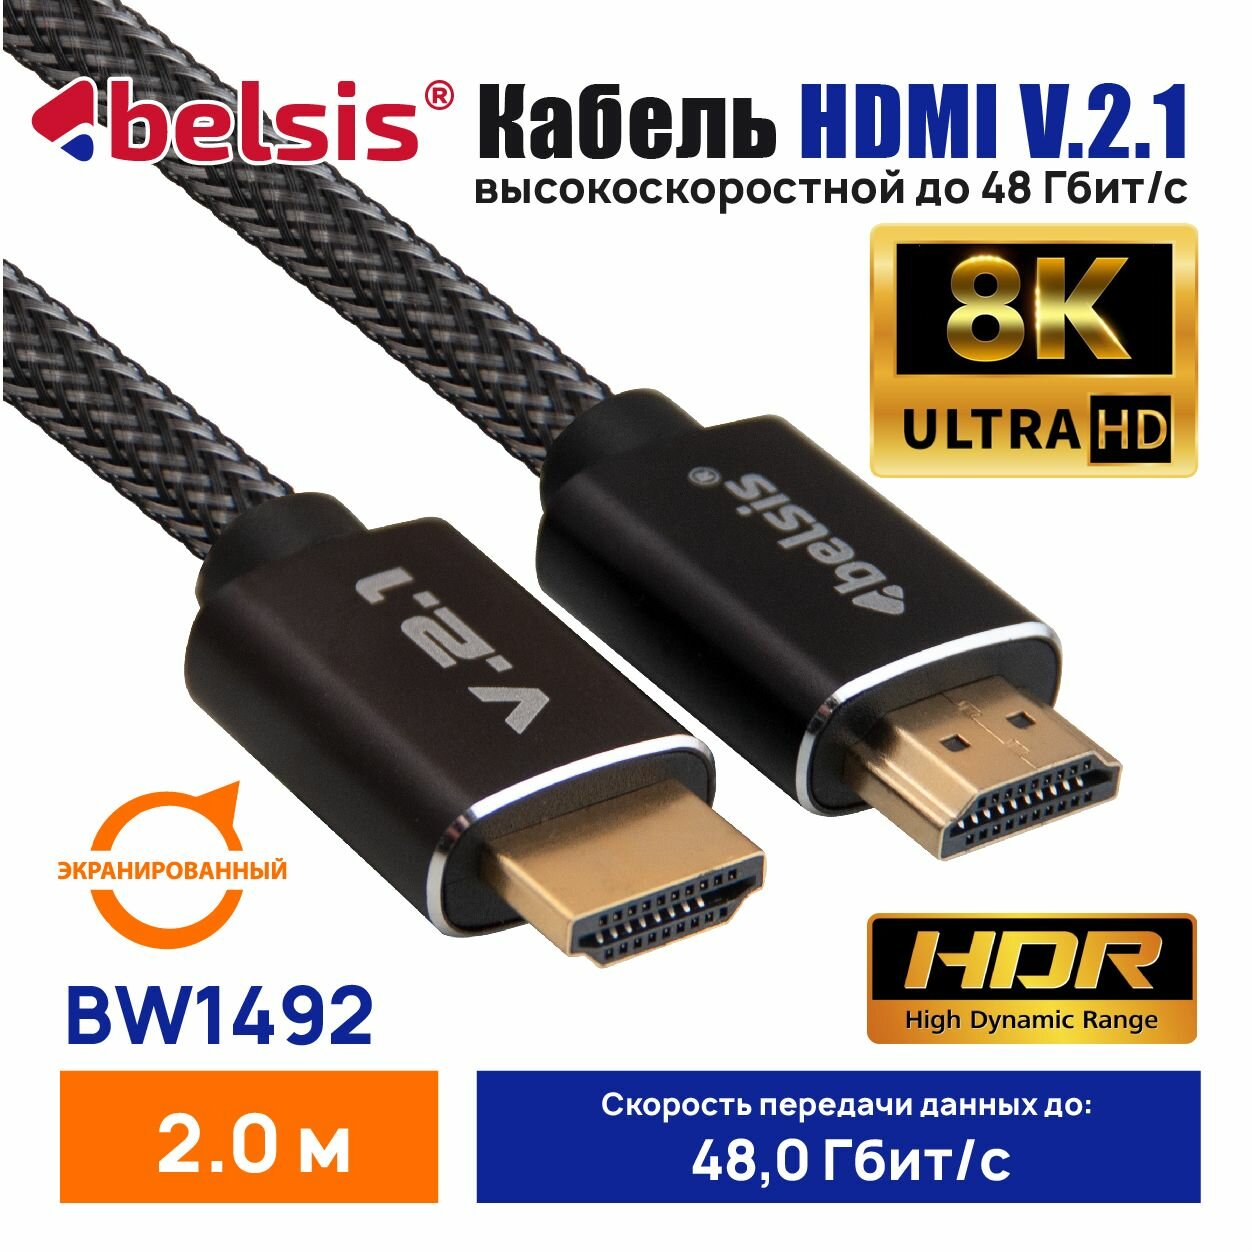 Кабель HDMI 2.1 ExtraHQ Belsis бескислородная медь металлический разъём нейлоновая оплётка 2 метра чёрный BW1492